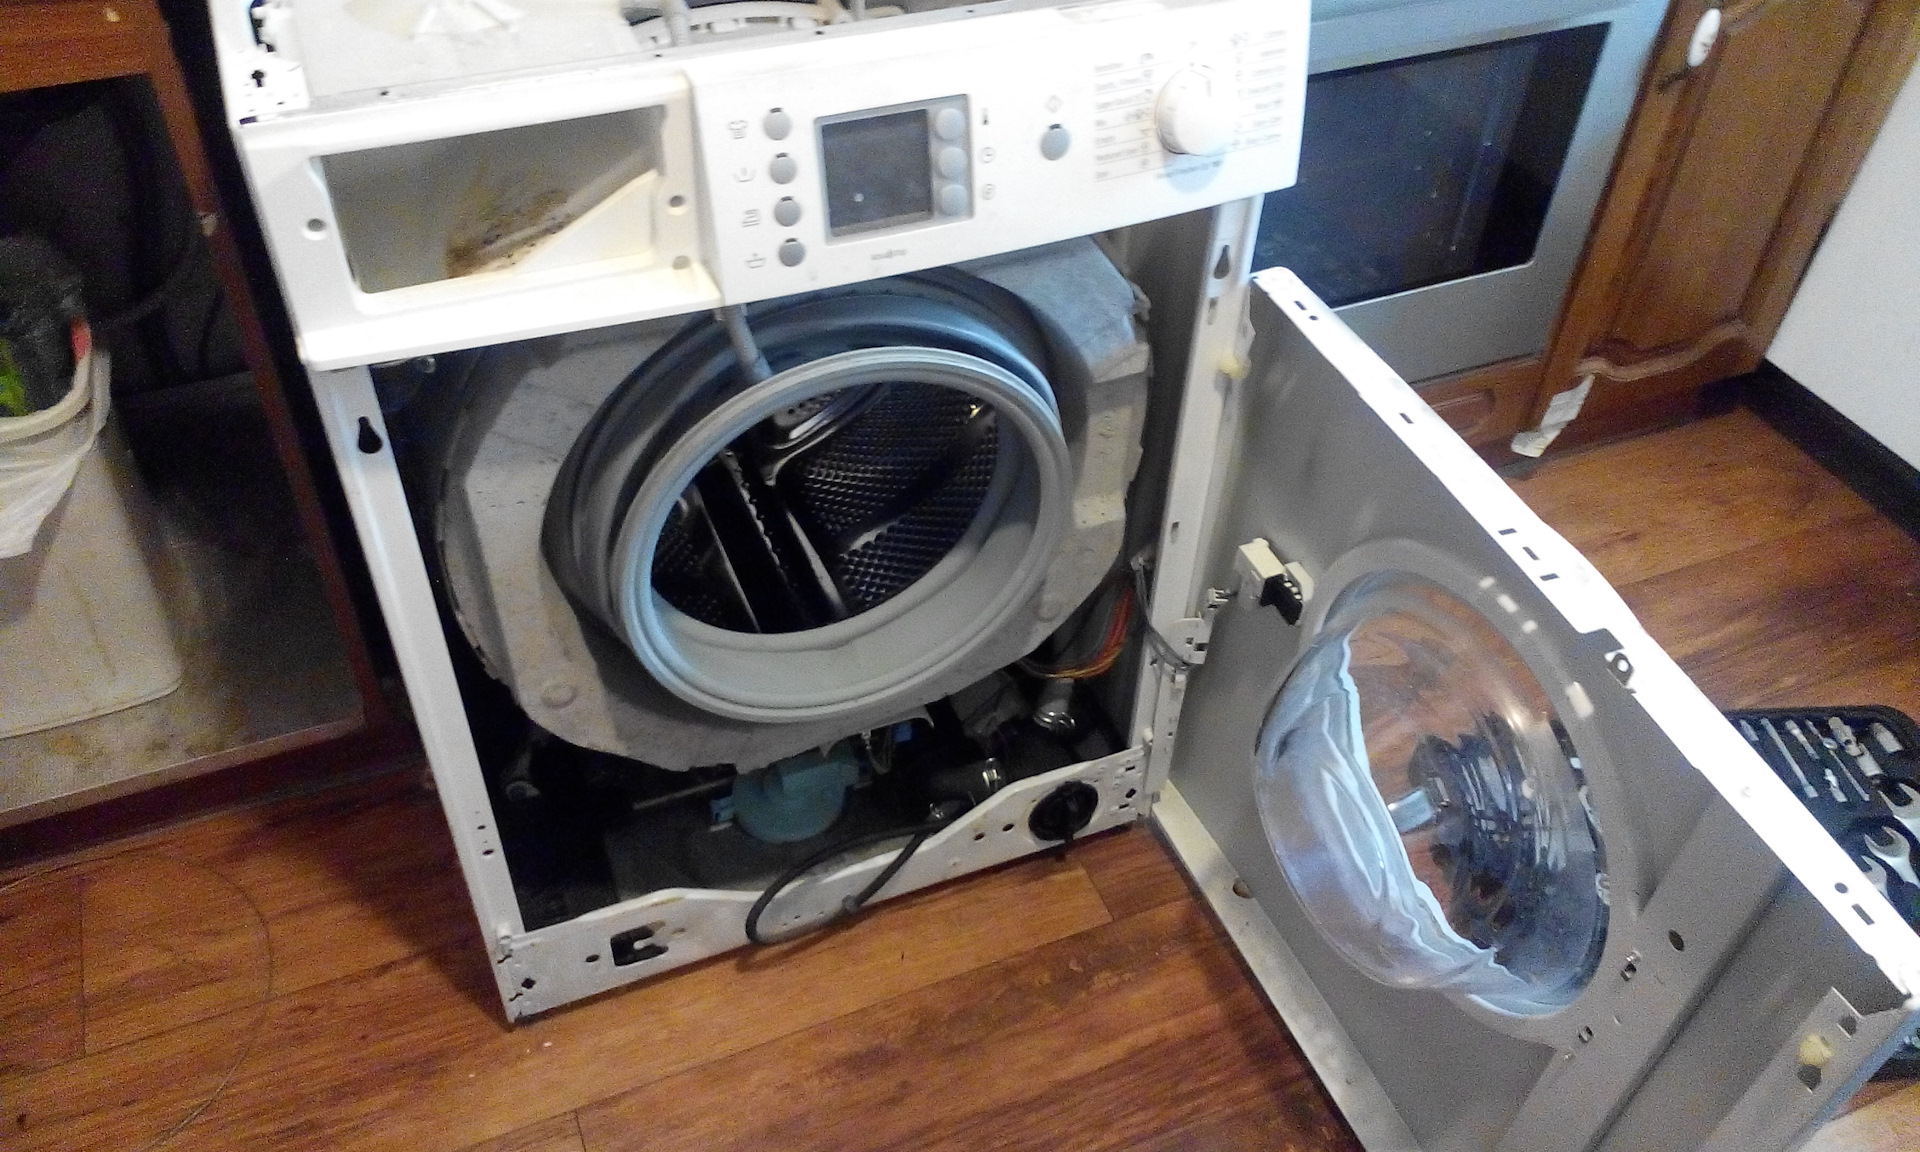 Разбивают стиральную машину. Сломанная стиральная машинка. Разобранная стиральная машина. Поломанная стиральная машина. Разбитая стиральная машина.